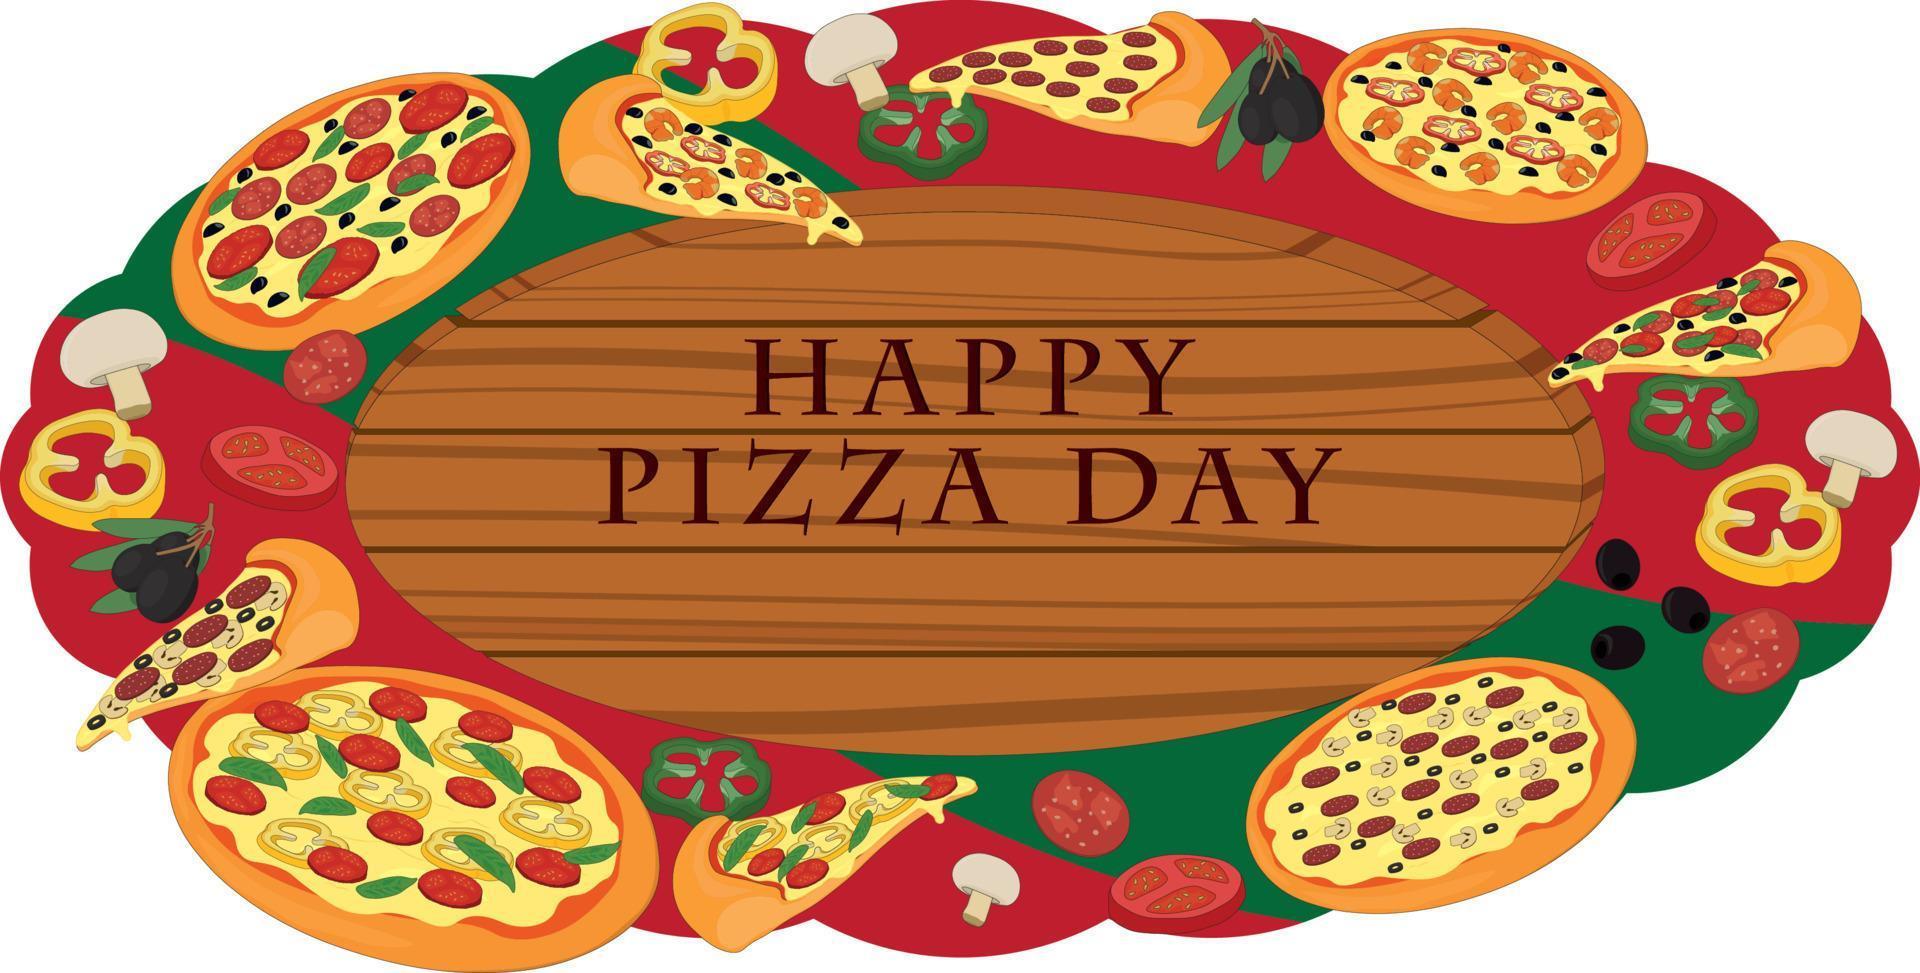 Feliz día de la pizza letrero de madera decorado con pizza e ingredientes ilustración vectorial vector